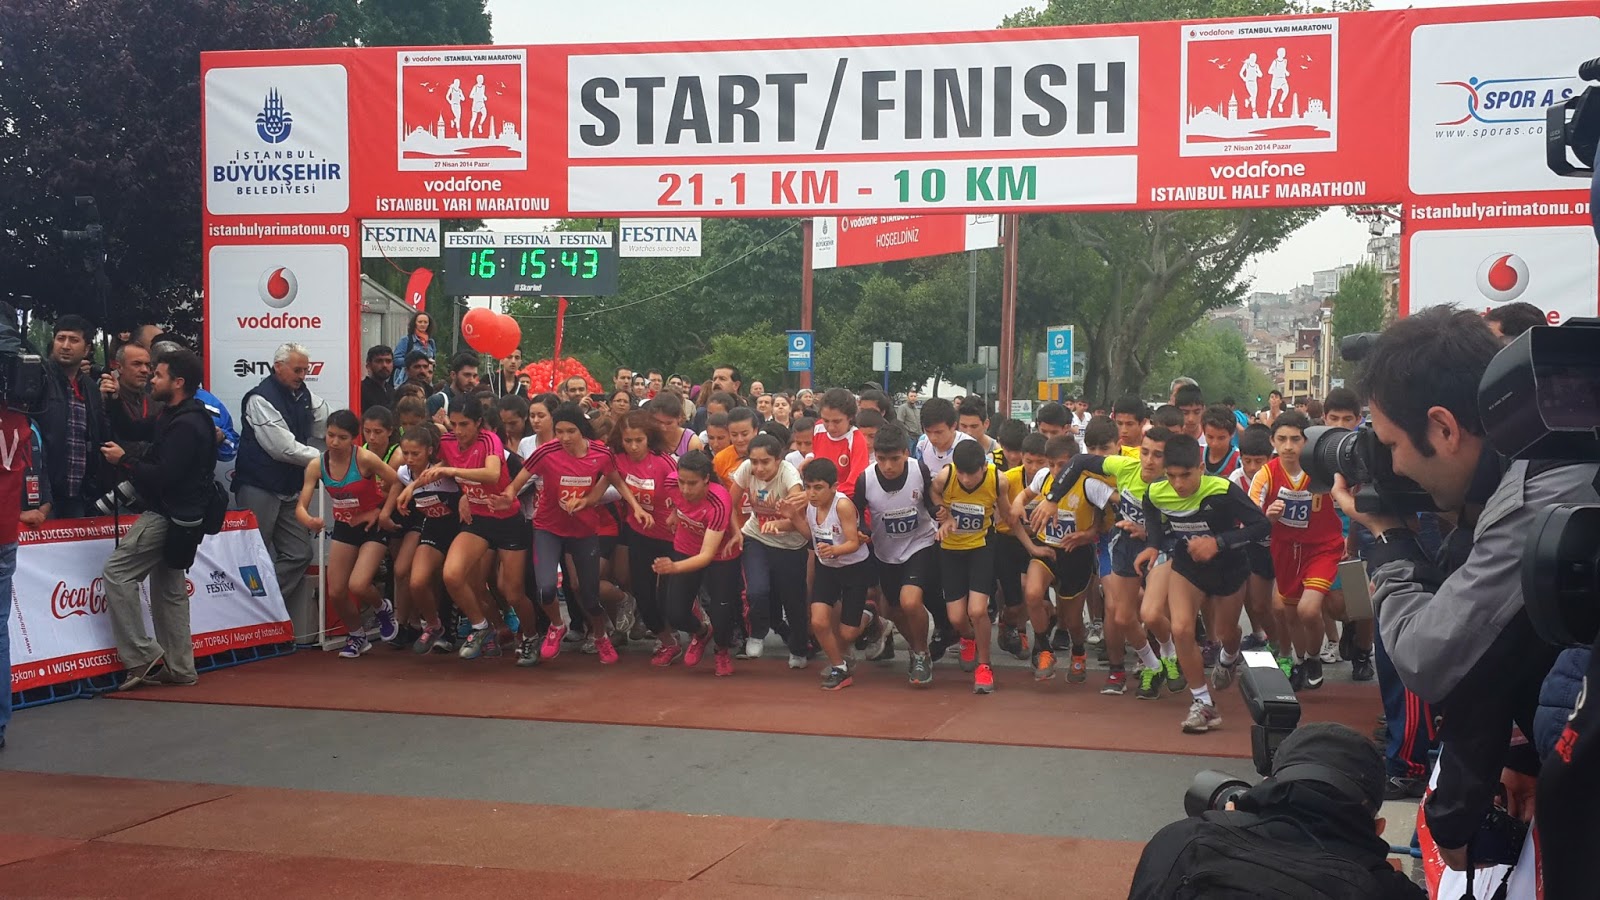 Vodafone Yarı İstanbul Maratonu 2014 Nisan start 